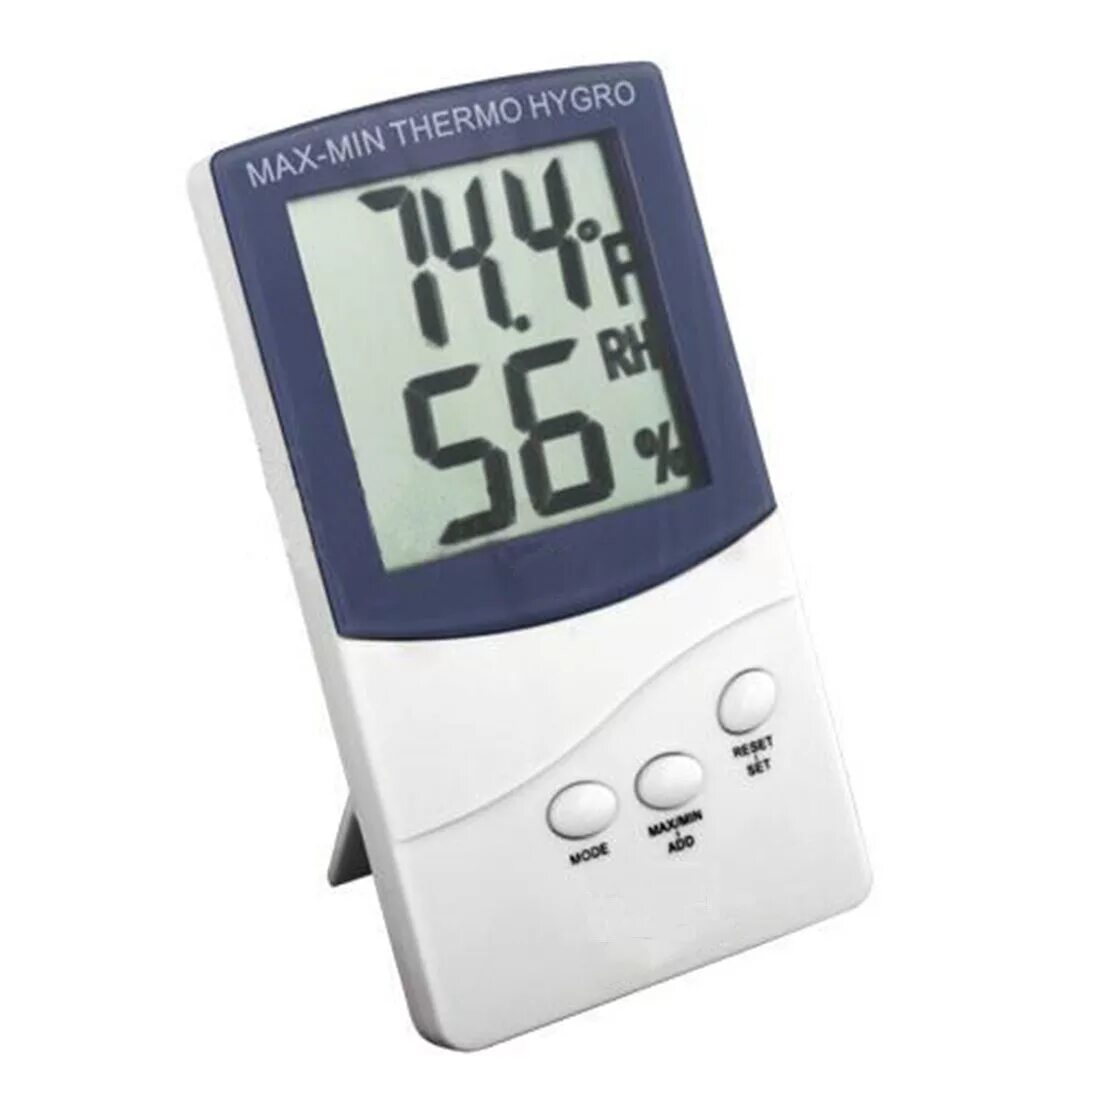 Приборы для воздуха в квартире. Гигрометр тесто 206р Hi. Приборы метеостанции. Прибор для измерения влажности и температуры воздуха в помещении. Влагомер для теста.